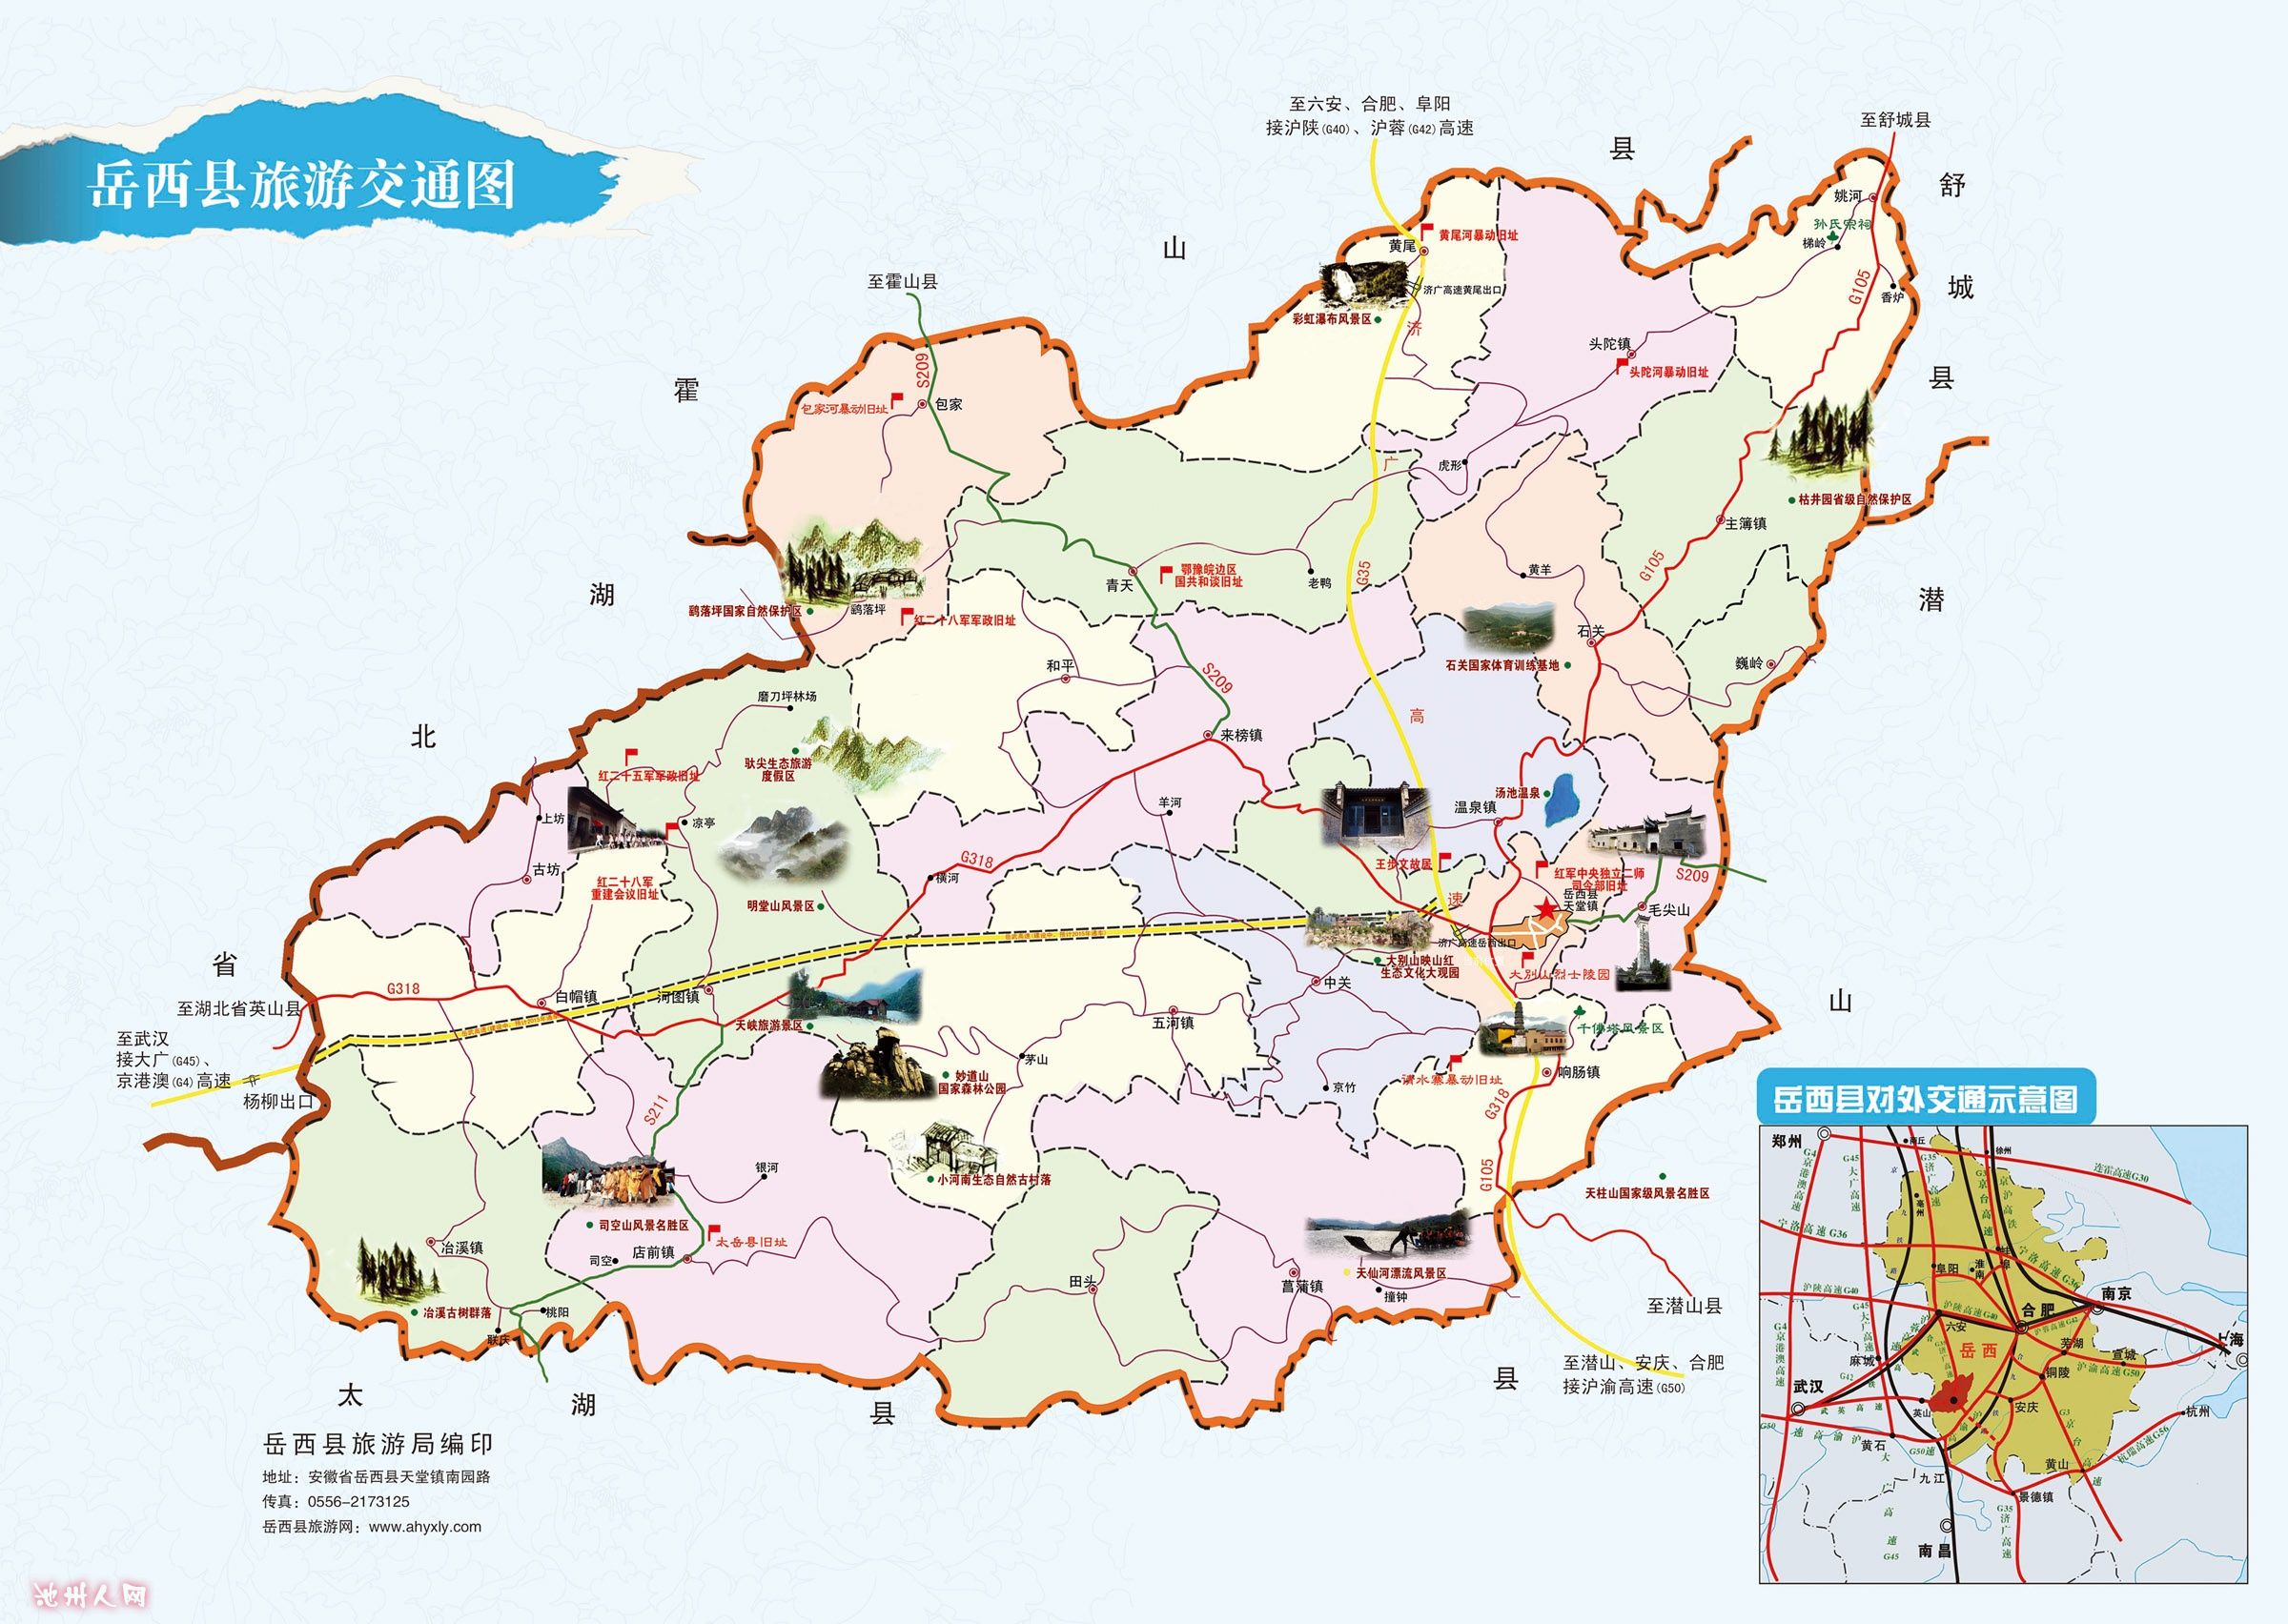 附上岳西县交通旅游地图及行政区划图,他山的东西可以借鉴.图片